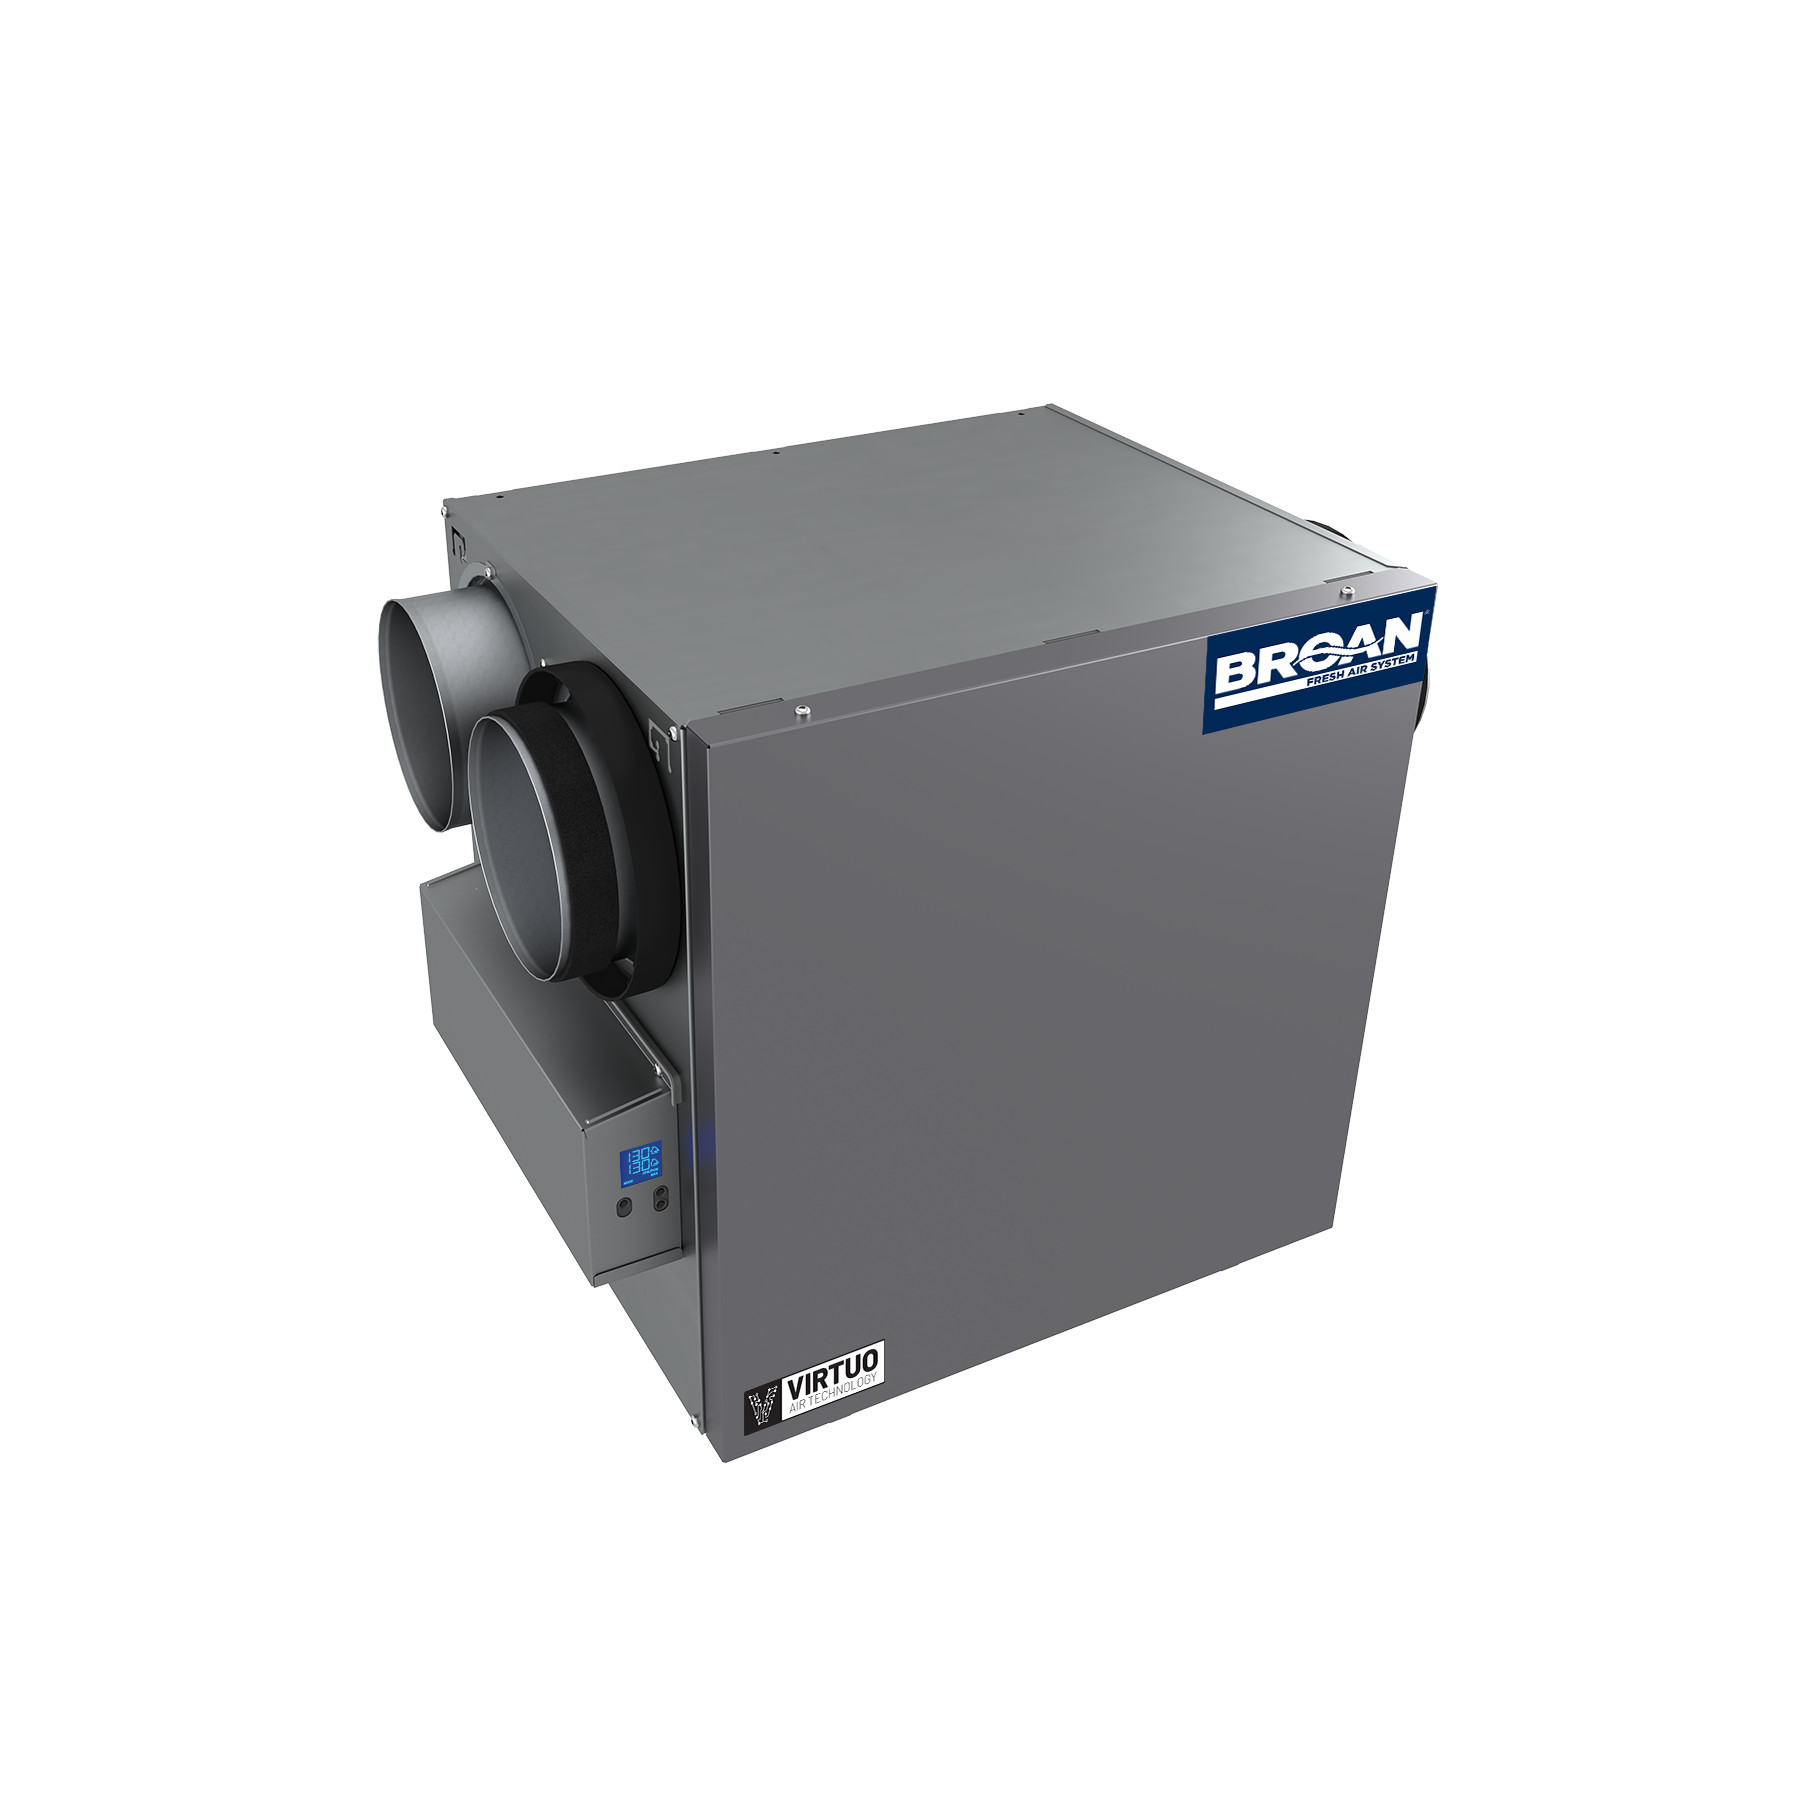 Broan® AI Series™ 110 CFM Heat Recovery Ventilator (HRV) 